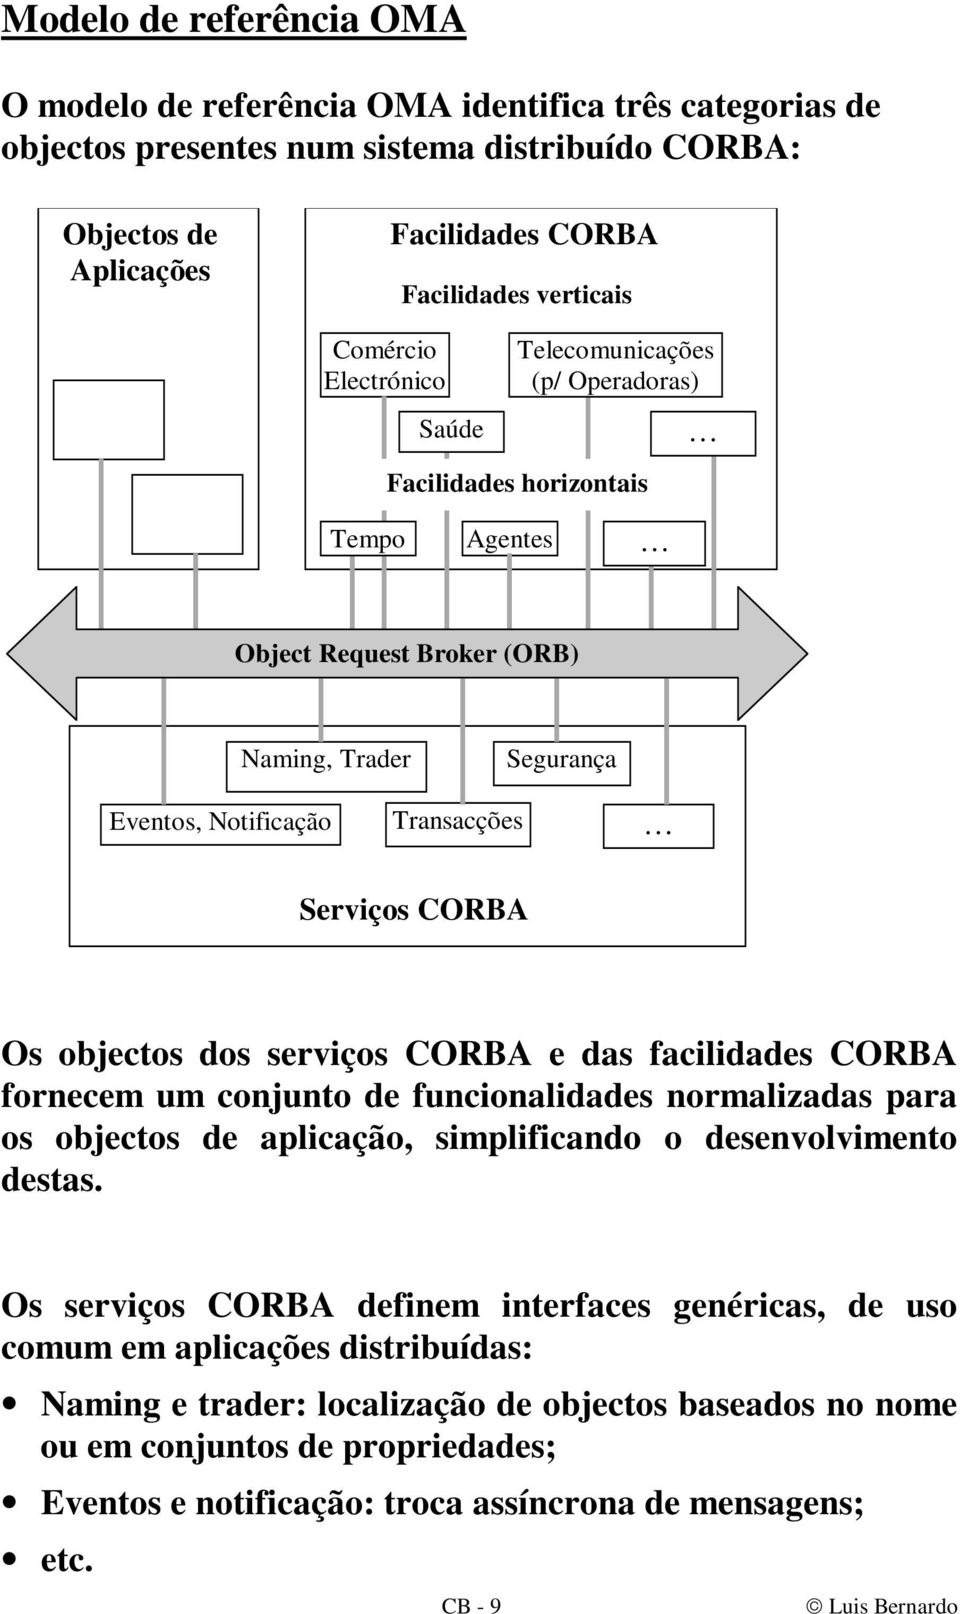 Os objectos dos serviços CORBA e das facilidades CORBA fornecem um conjunto de funcionalidades normalizadas para os objectos de aplicação, simplificando o desenvolvimento destas.